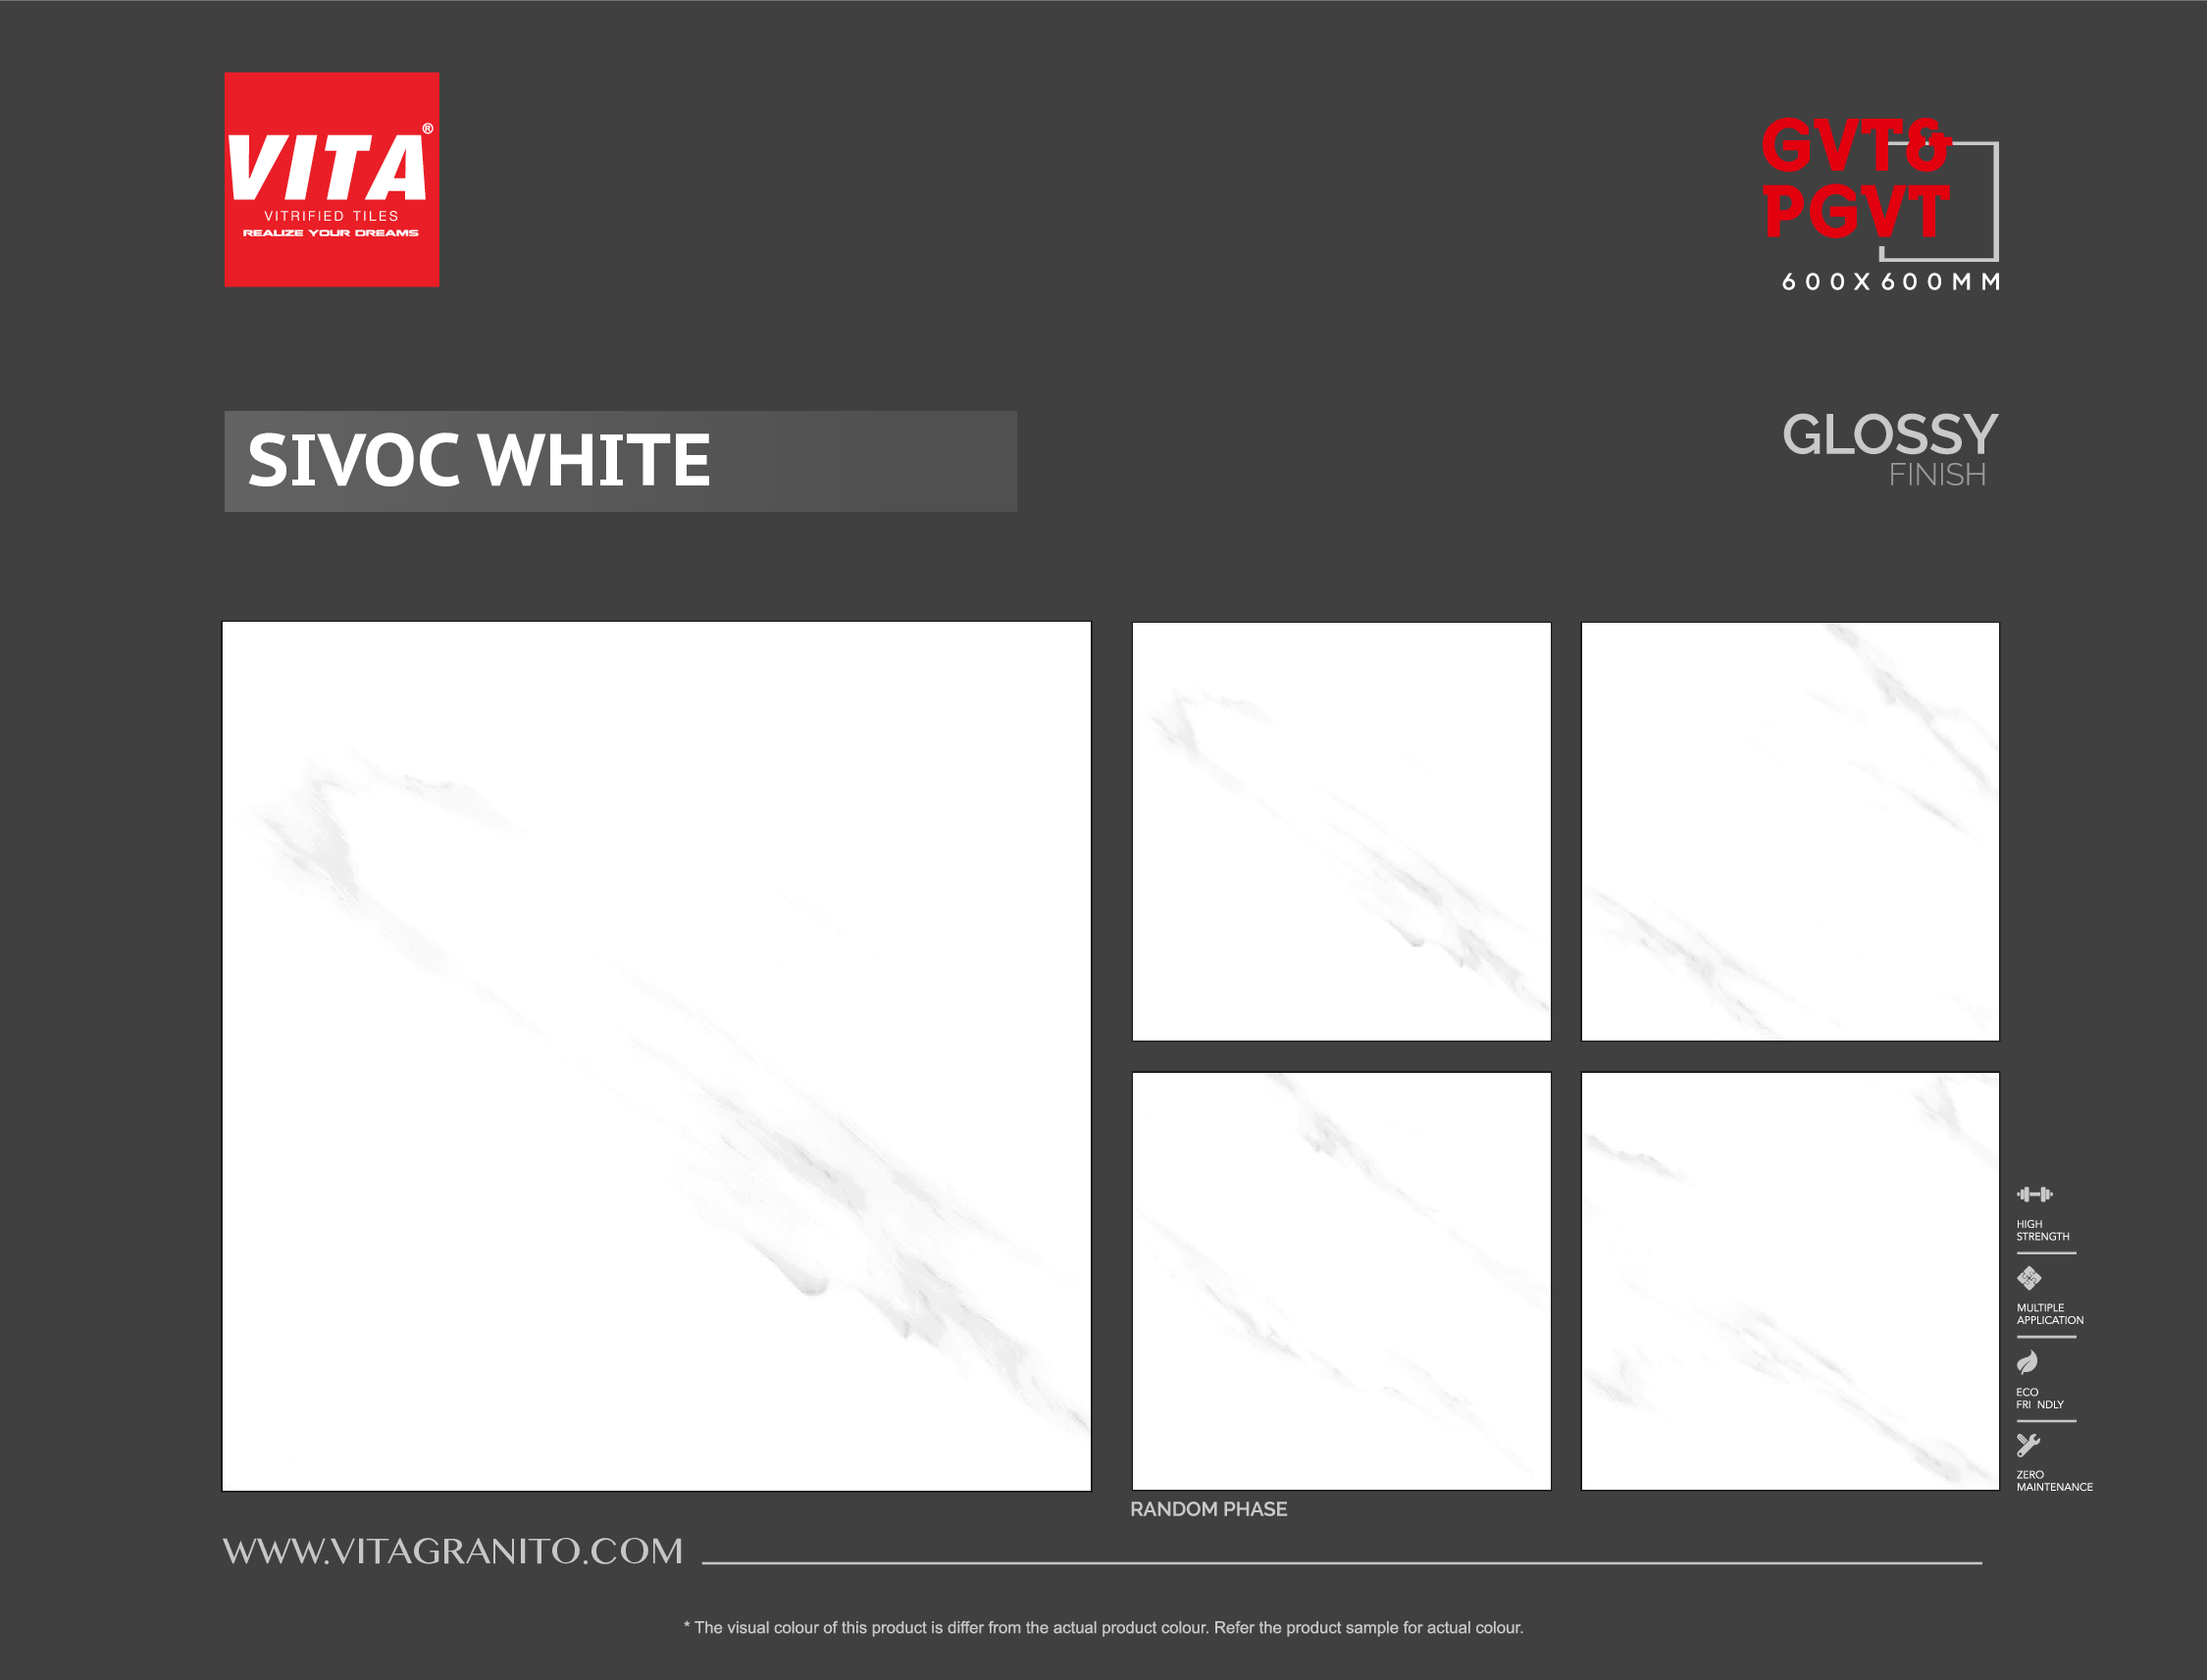 SIVOC WHITE